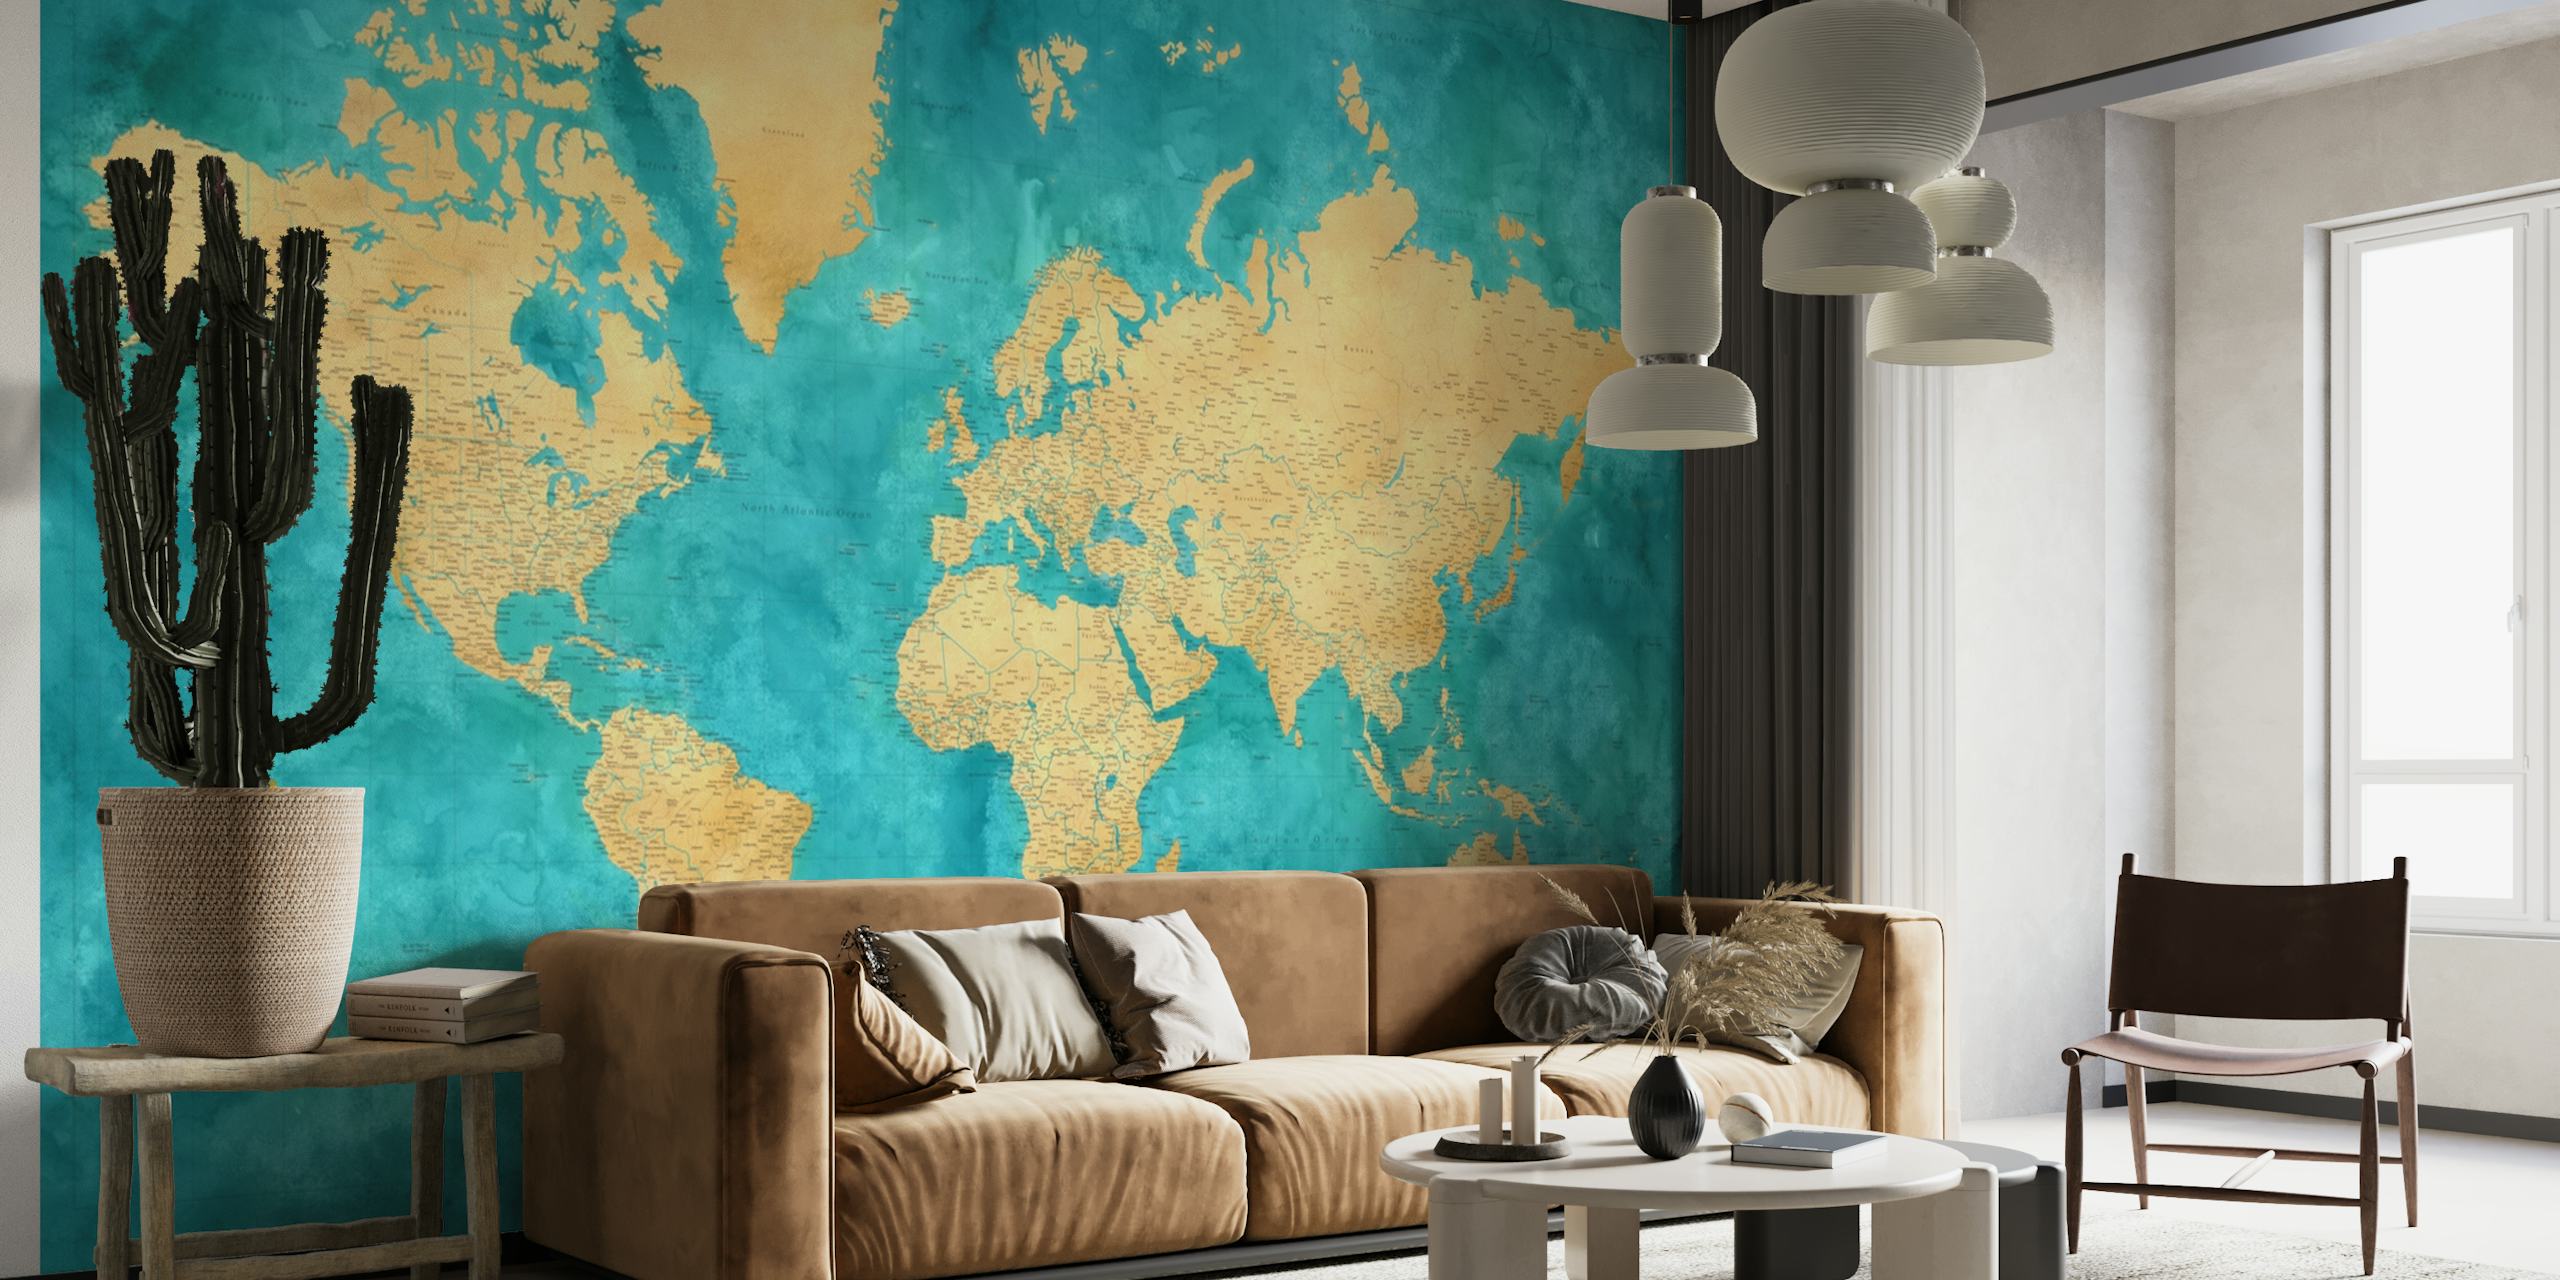 Fotomural vinílico de parede Lexy de mapa mundial de alto detalhe com fundo aquarela turquesa